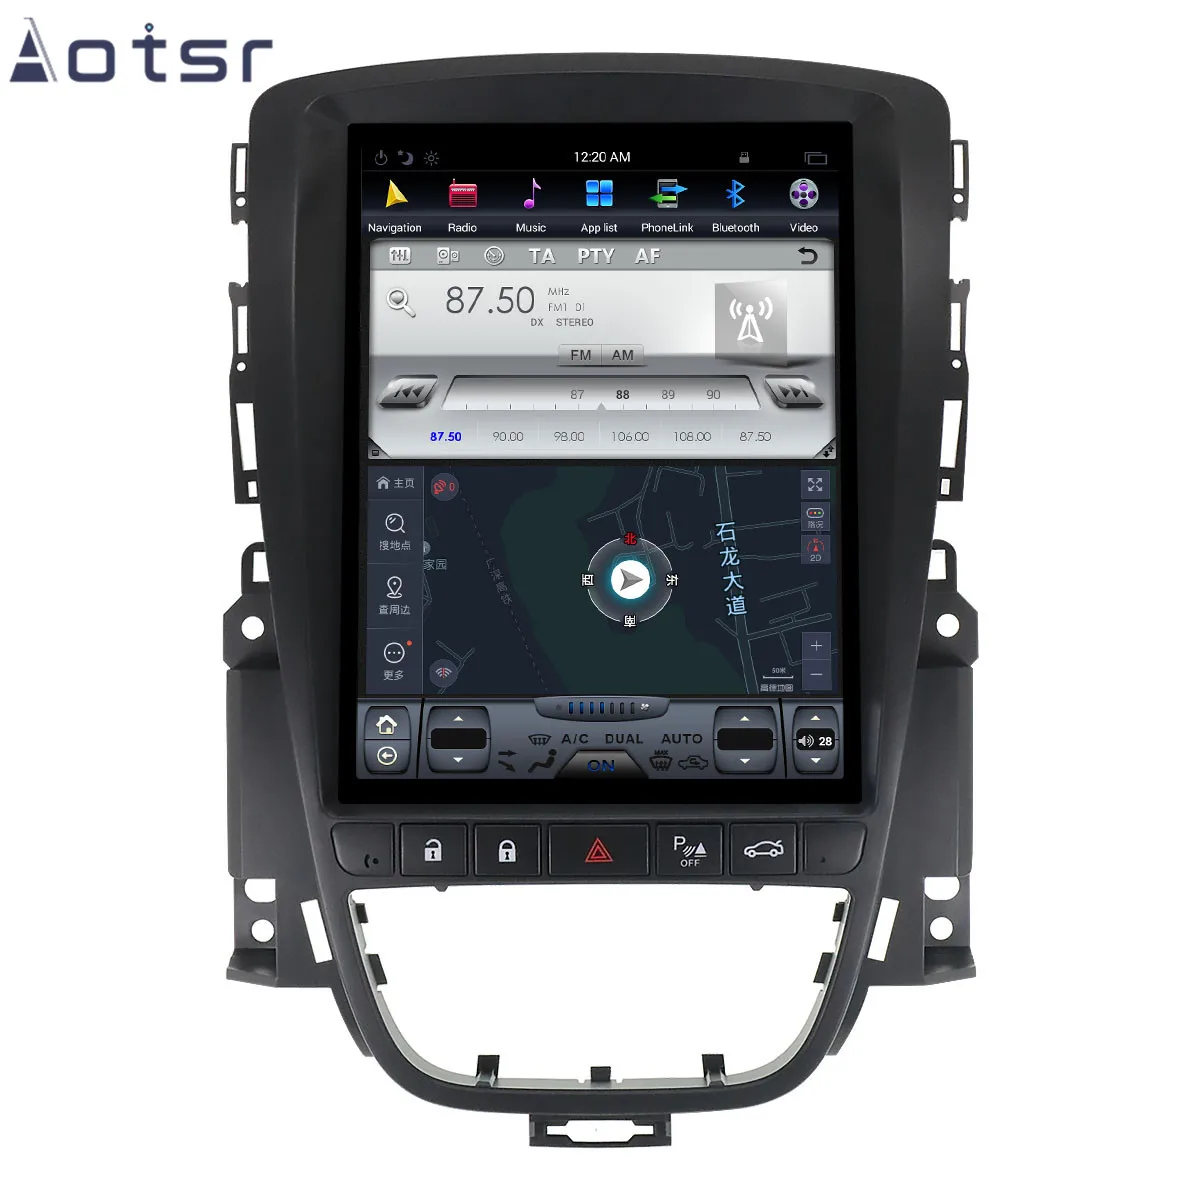 AOTSR 10,4 дюймов Android 8,1 Tesla стиль вертикальный экран Автомобильный gps навигатор для OPEL Astra J 2010+ мультимедийный плеер аудио wifi